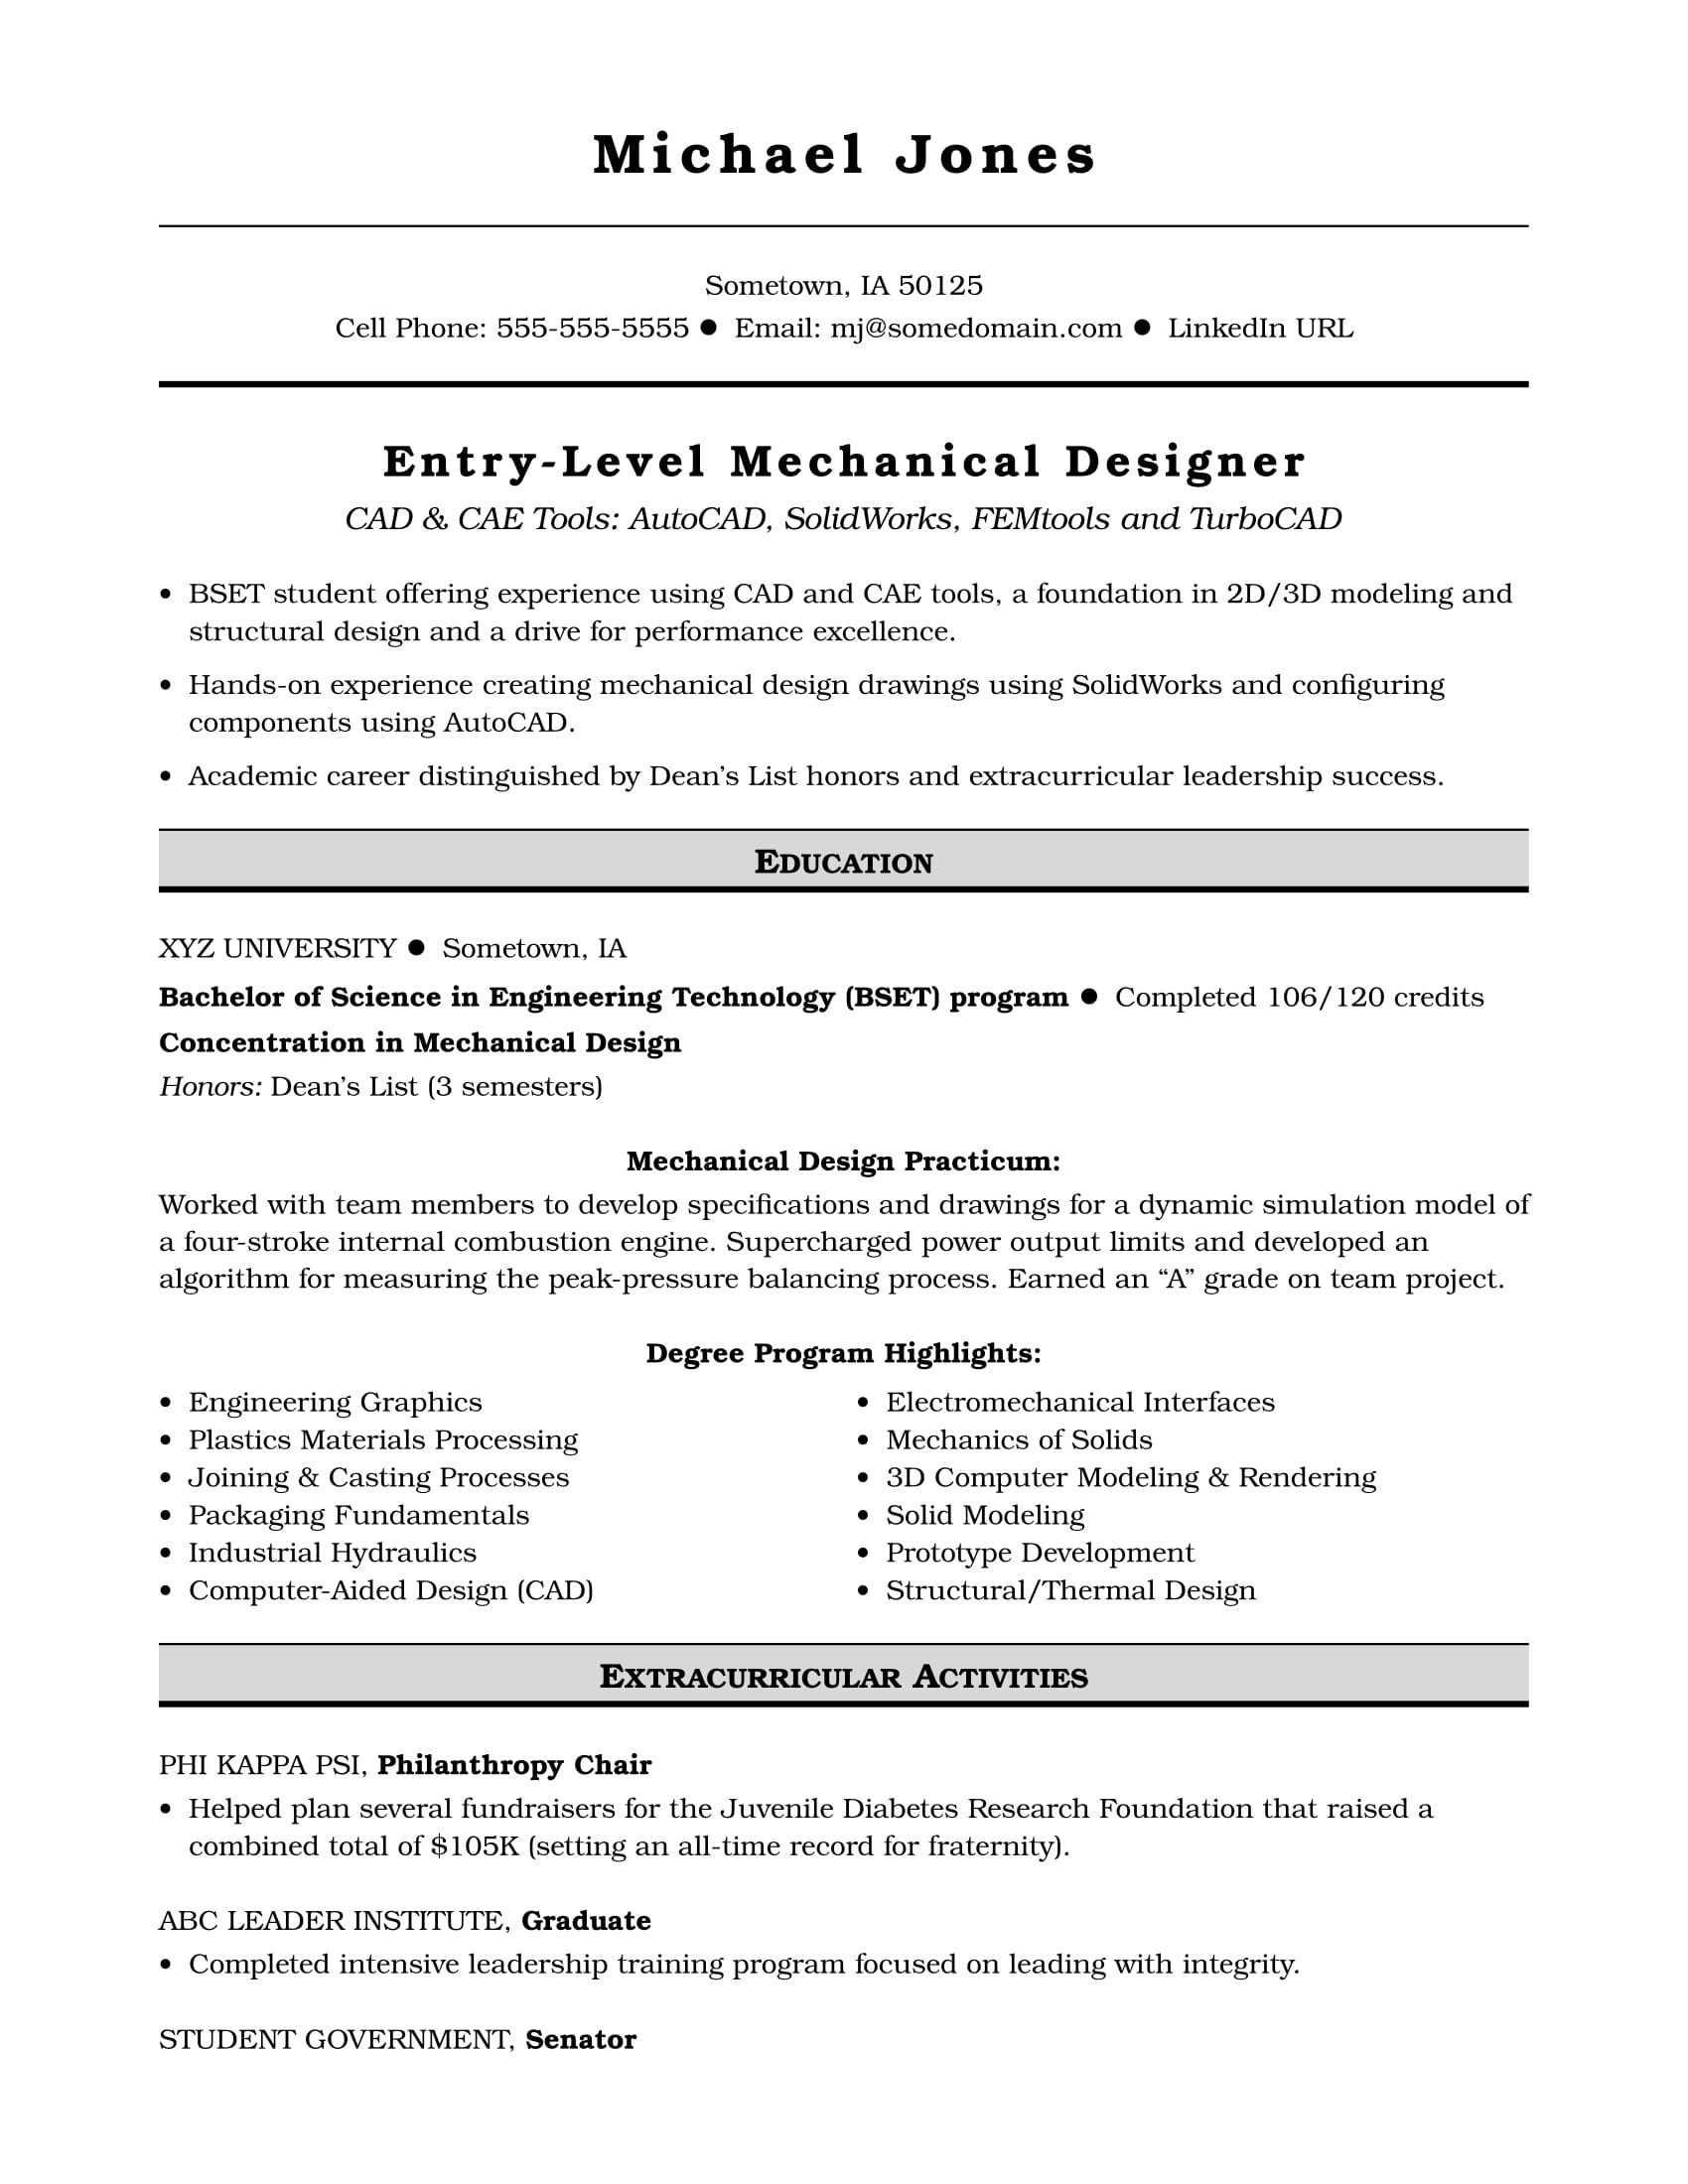 Sample Resume for Academic for Mechanical Engineering Chair Sample Resume for An Entry-level Mechanical Designer Monster.com